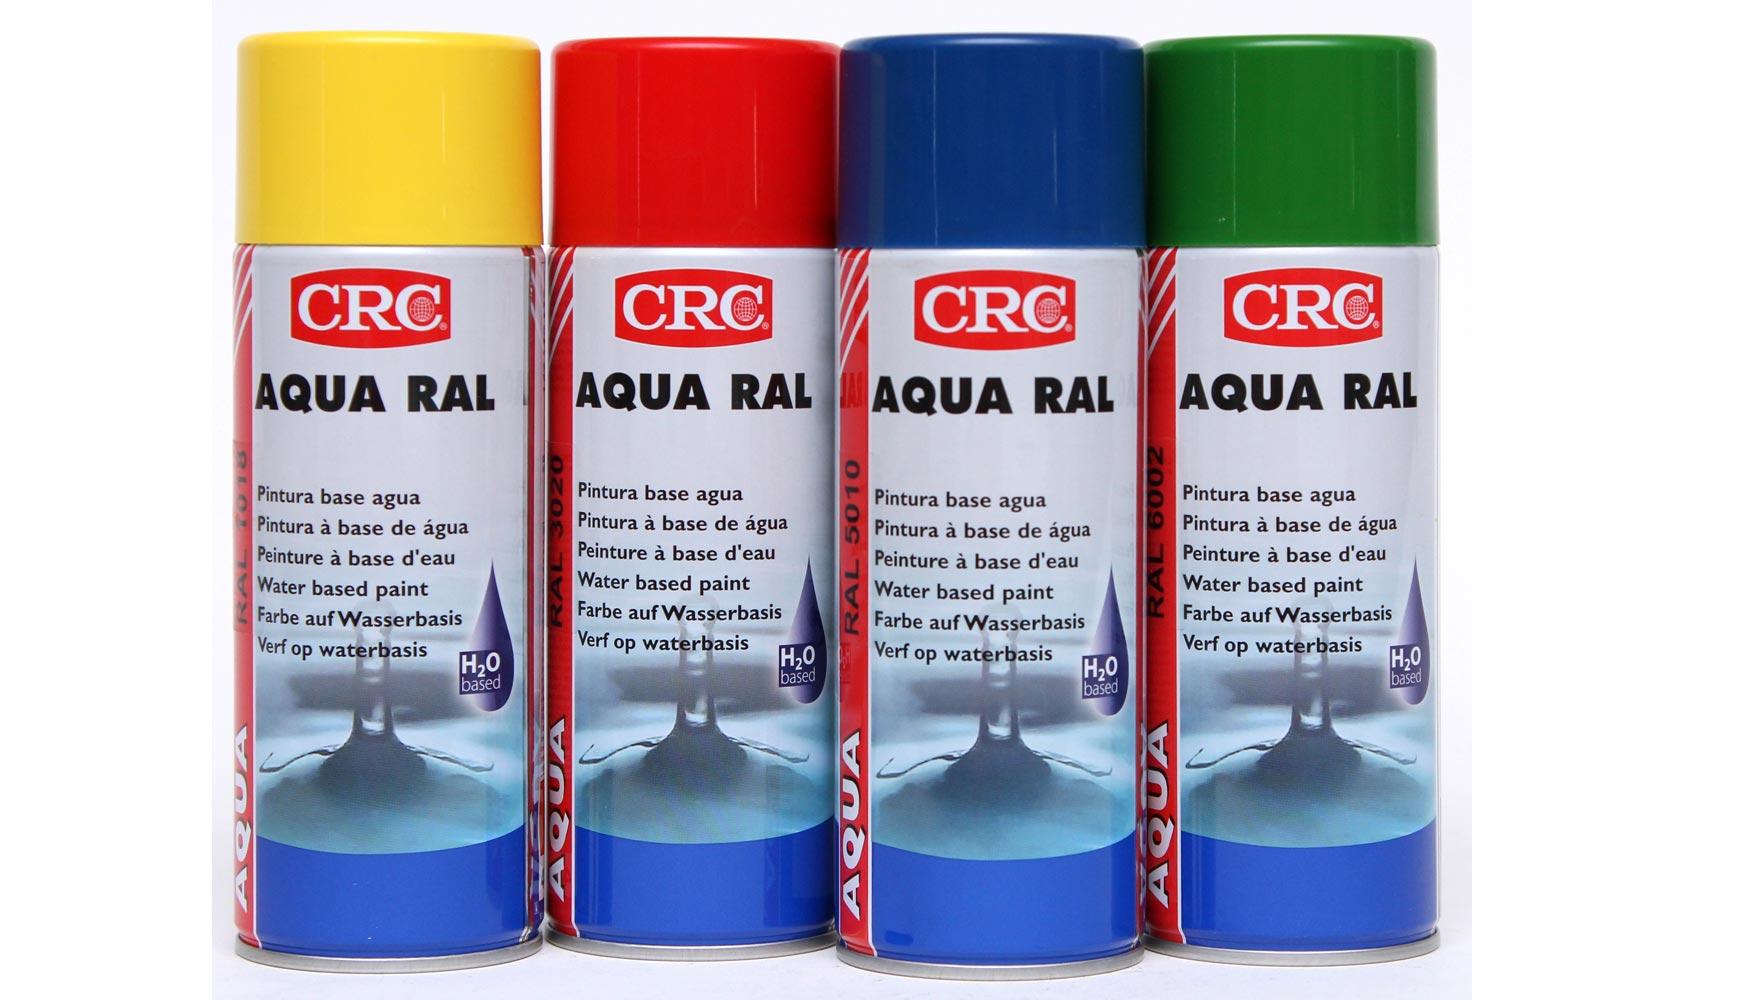 Aqua Ral asegura una alta resistencia a los rayos UV, no contiene metales pesados ni ataca plsticos sensibles